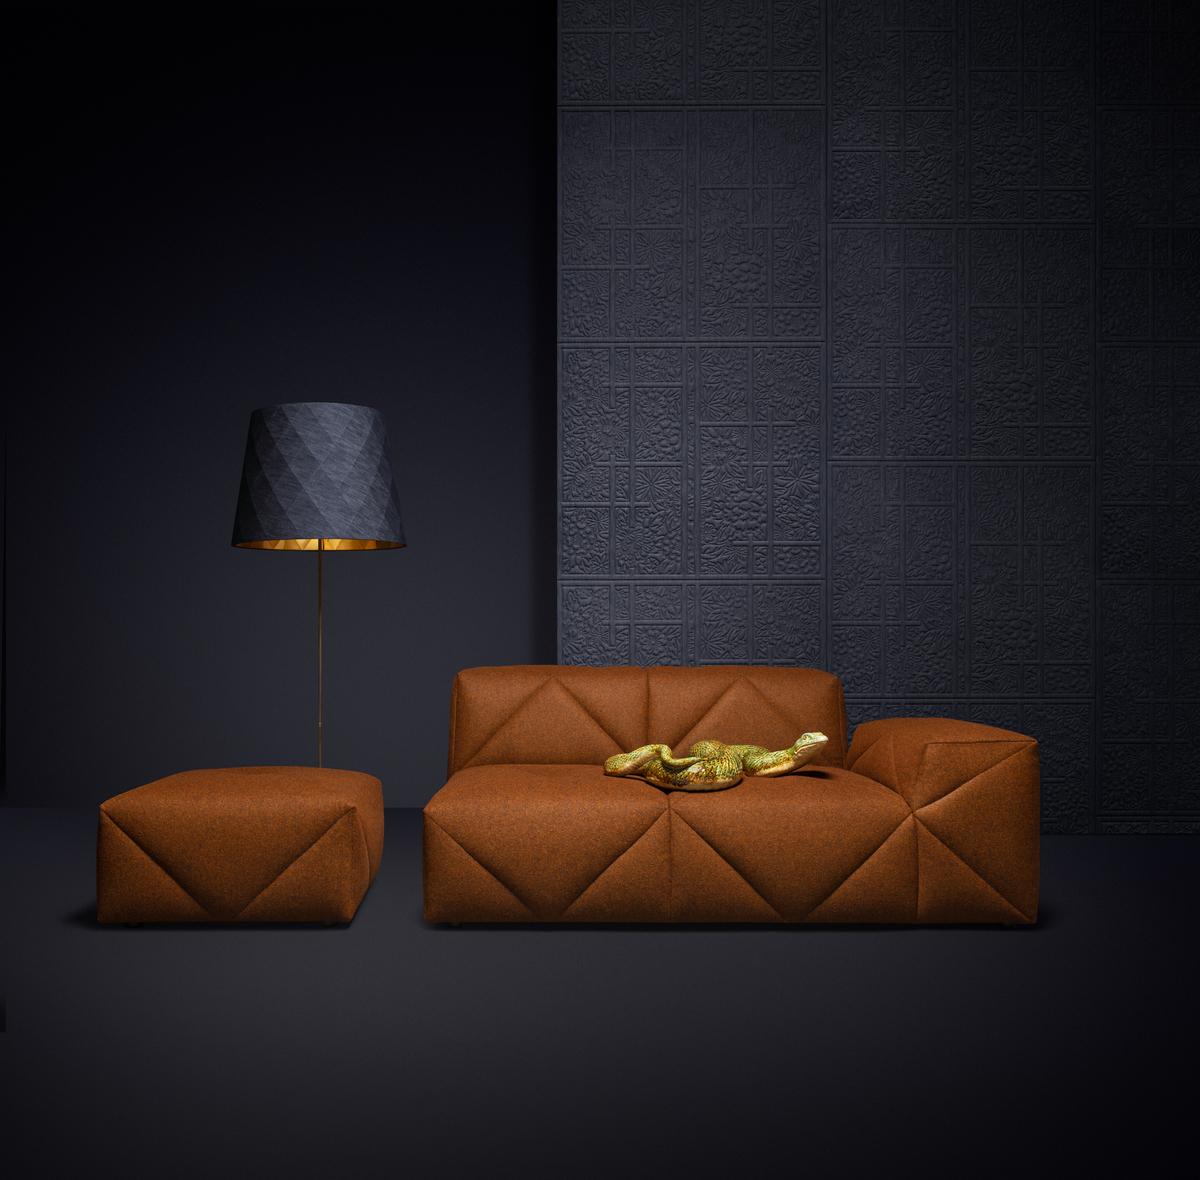 Das preisgekrönte BFF-Sofa von Marcel Wanders ist der neue beste Freund von allen! Ein hochwertiges, weiches und doch festes modulares Sofasystem, das aus einer Vielzahl von Modulen für endlose Konfigurationen besteht. BFF Footstool ist in mehr als